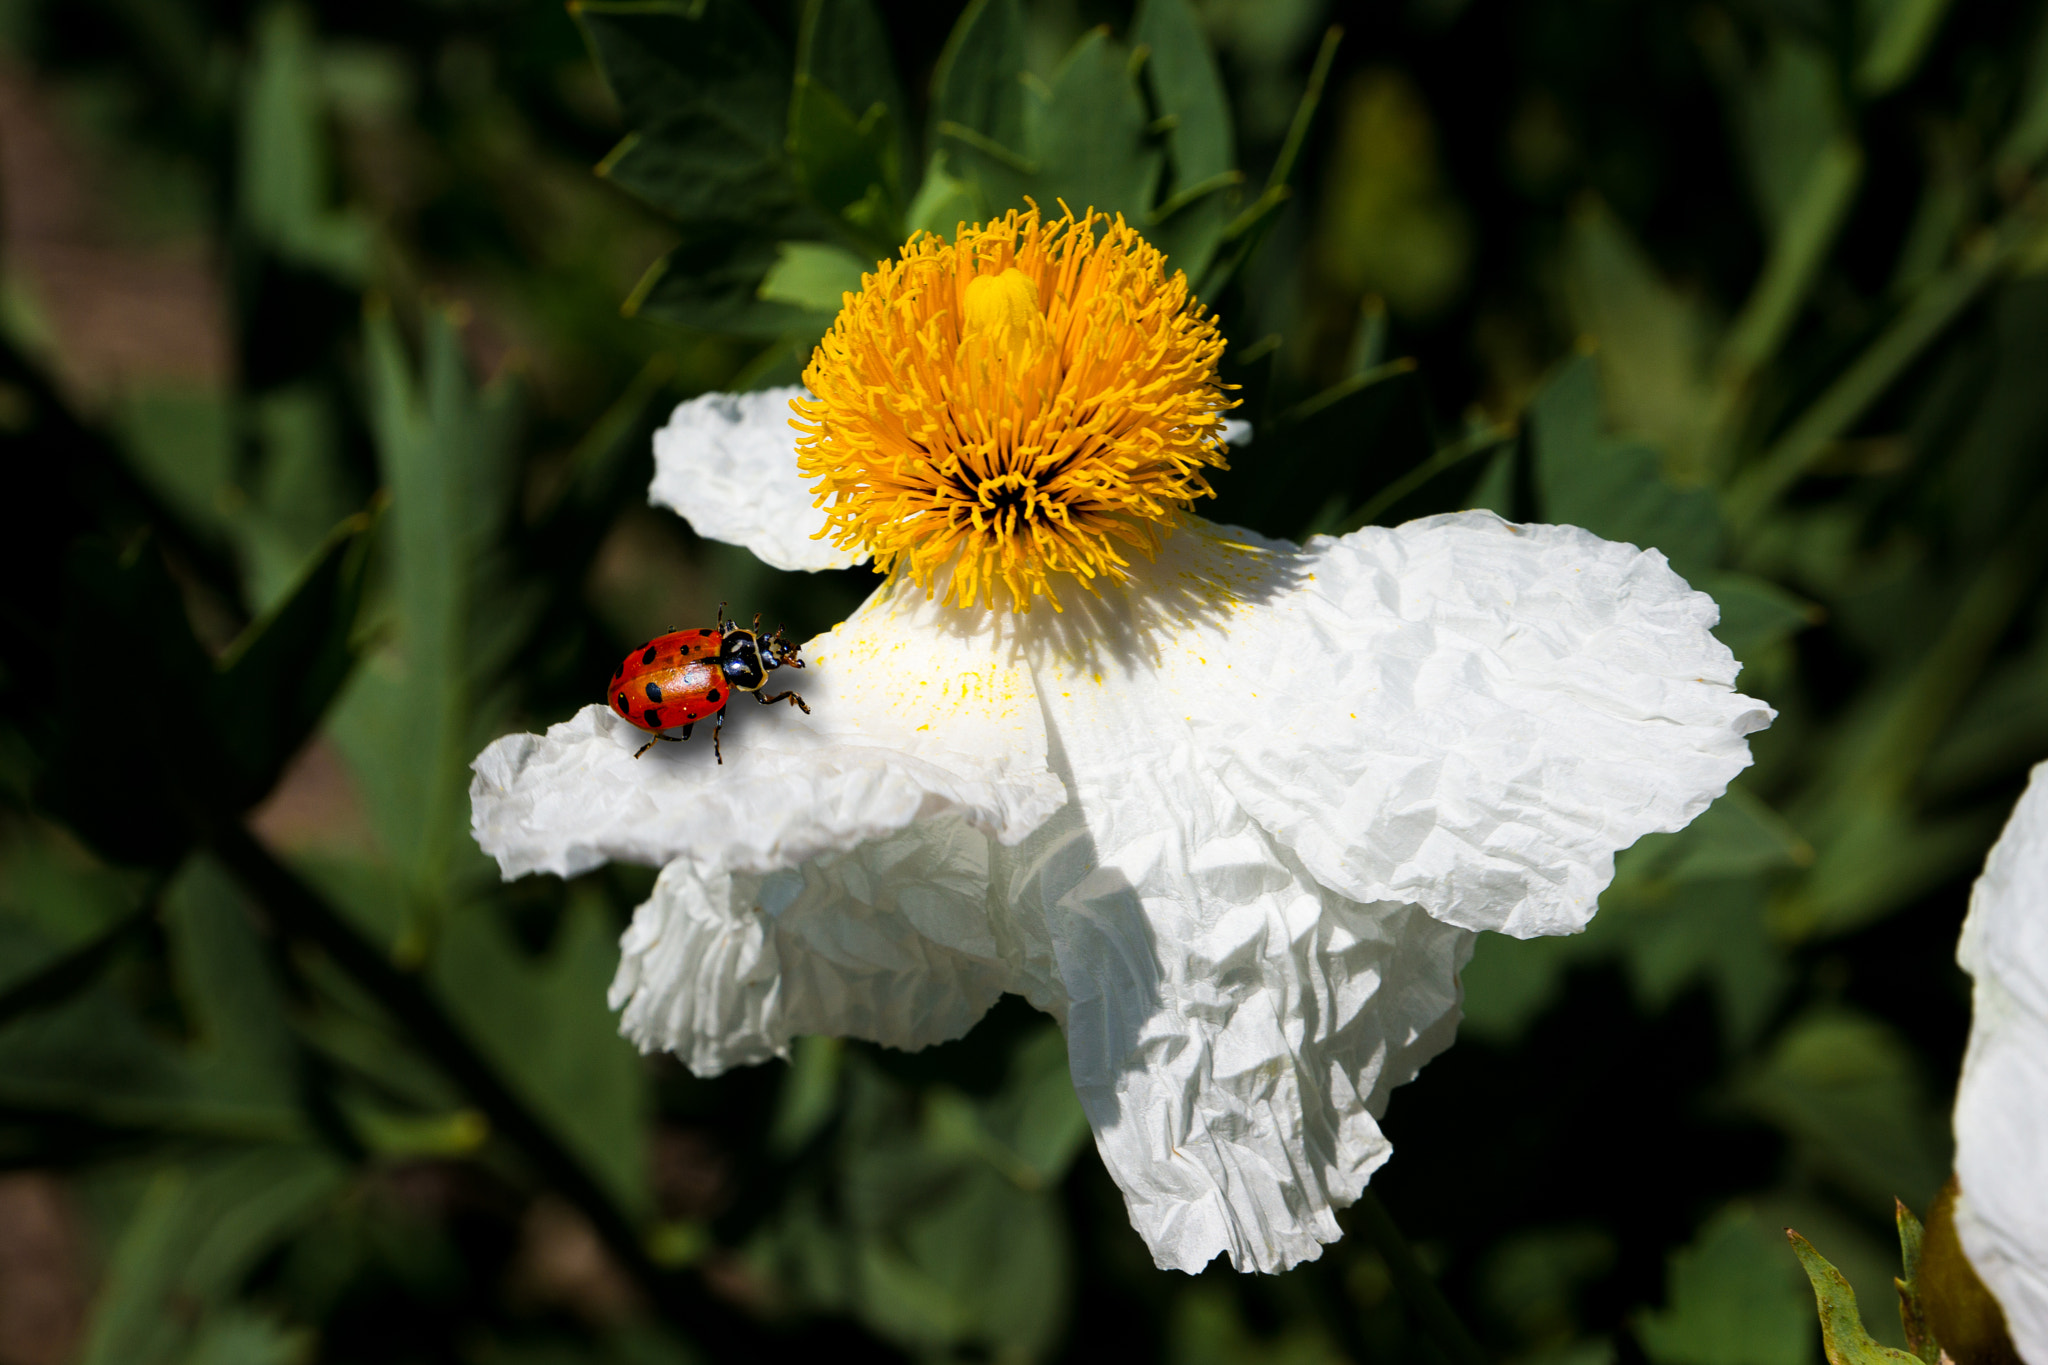 Sony Alpha NEX-7 sample photo. Ladybug photography